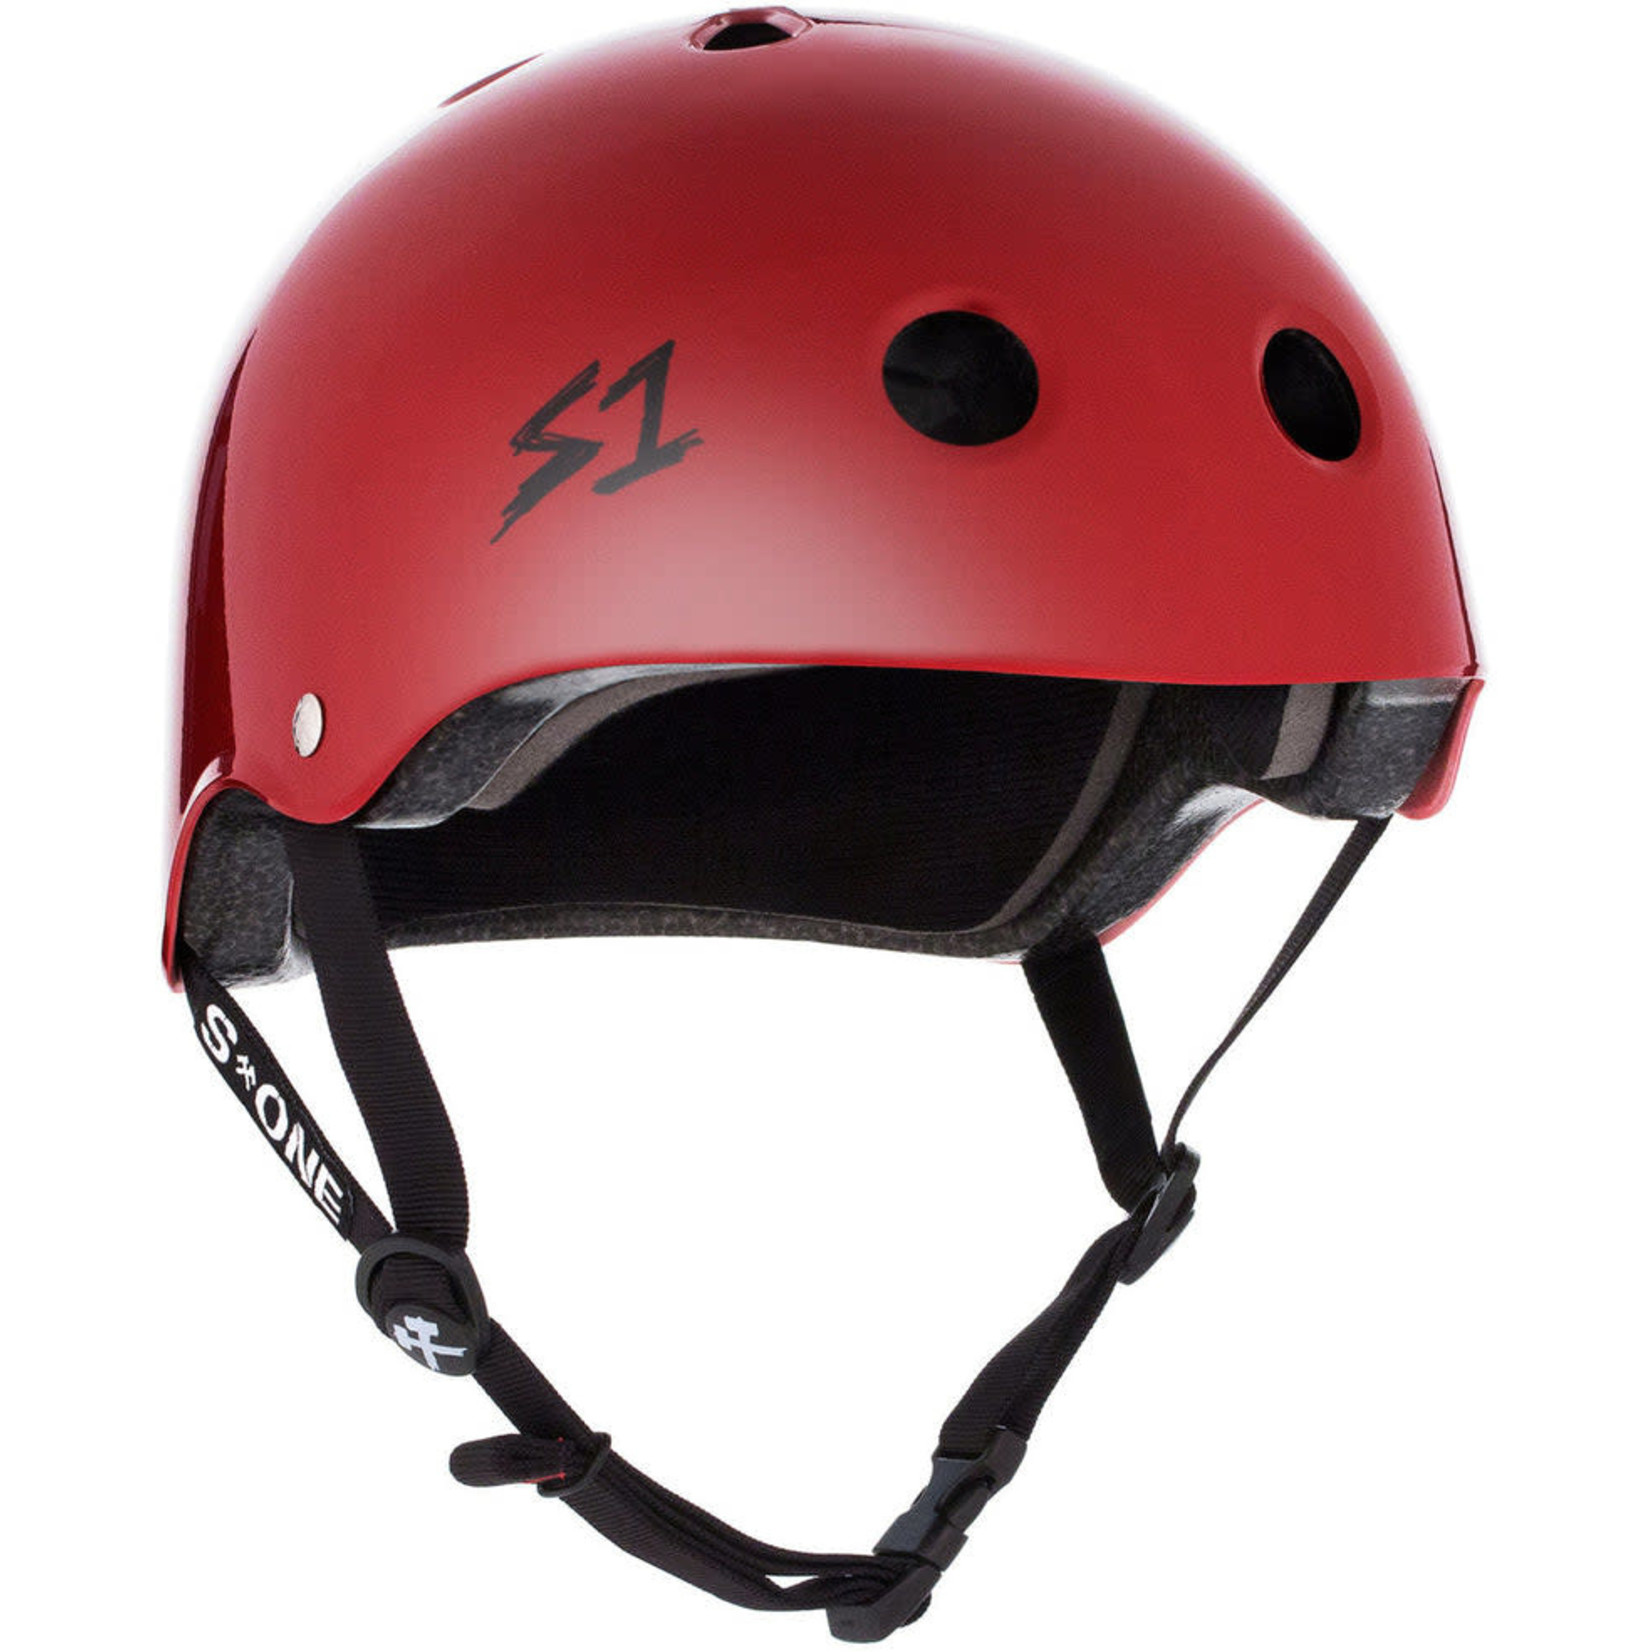 S1 Lifer helmet